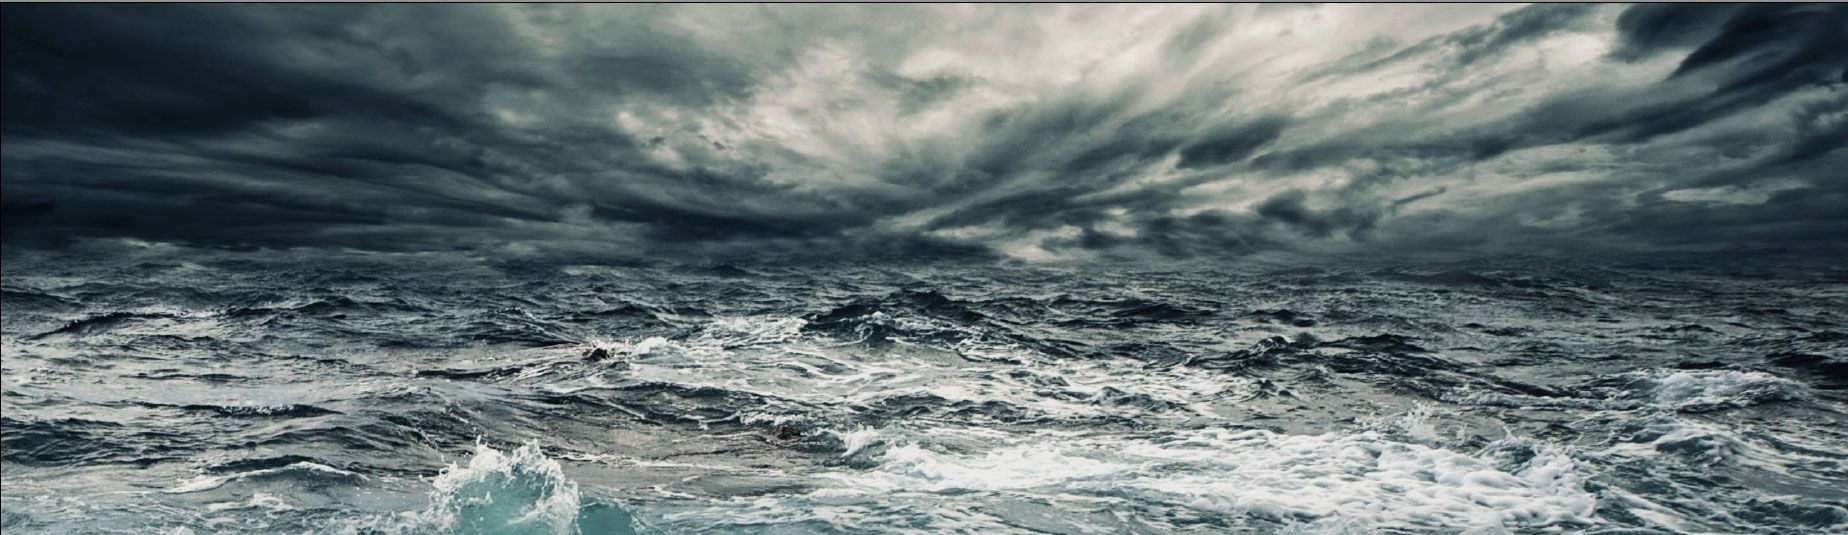 Sørlandets olje- og offshorekonferanse. Bilde av bølger.